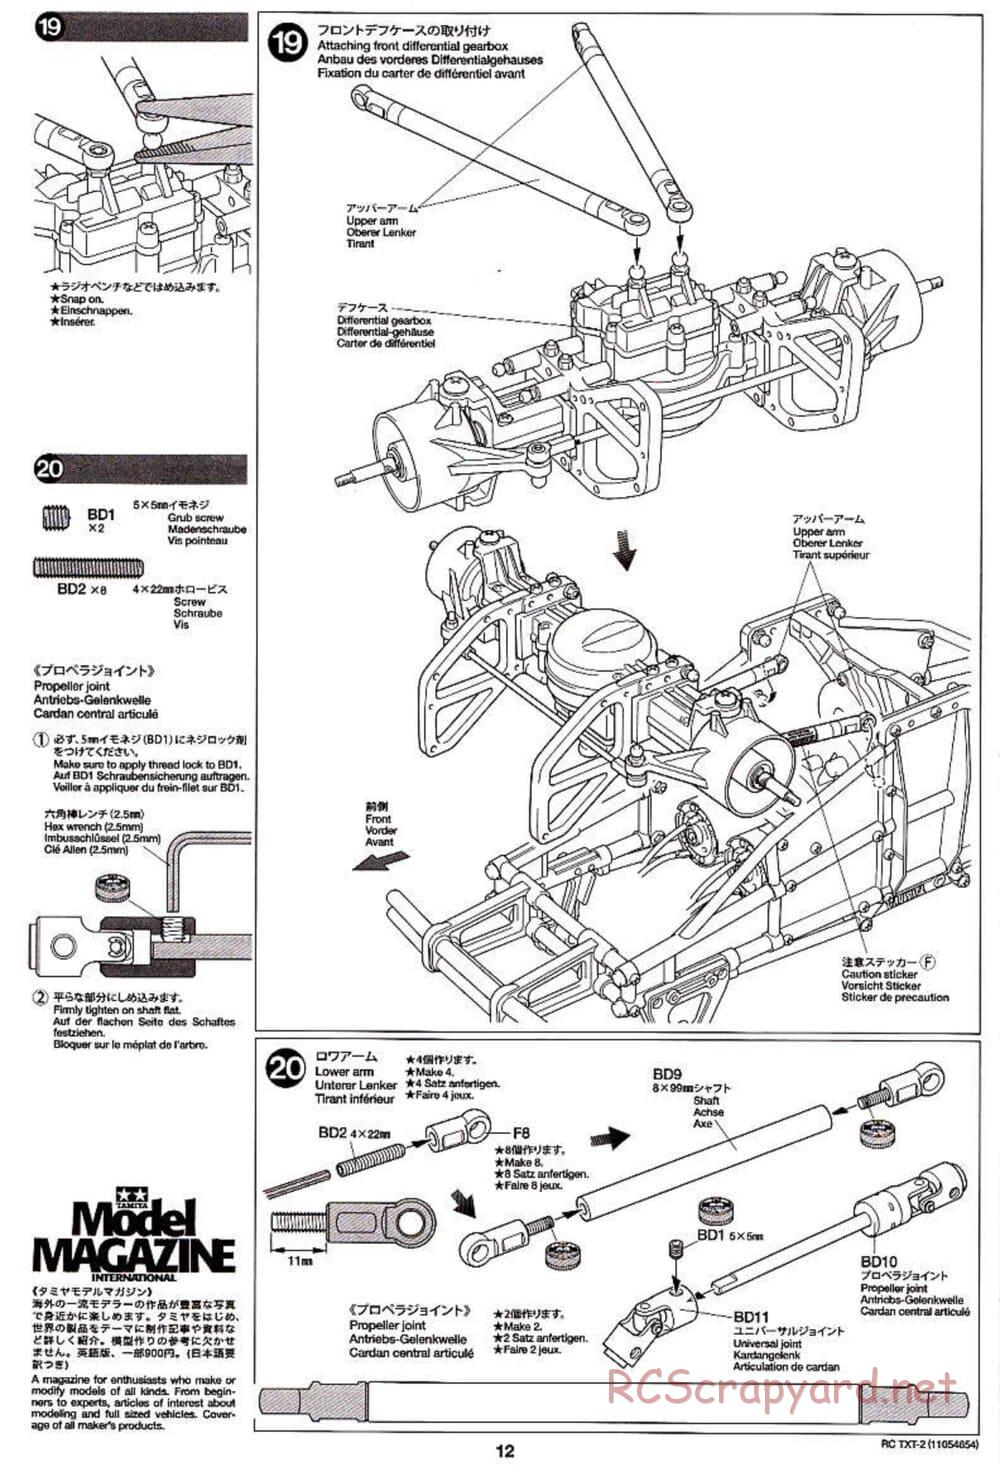 Tamiya - TXT-2 Chassis - Manual - Page 12